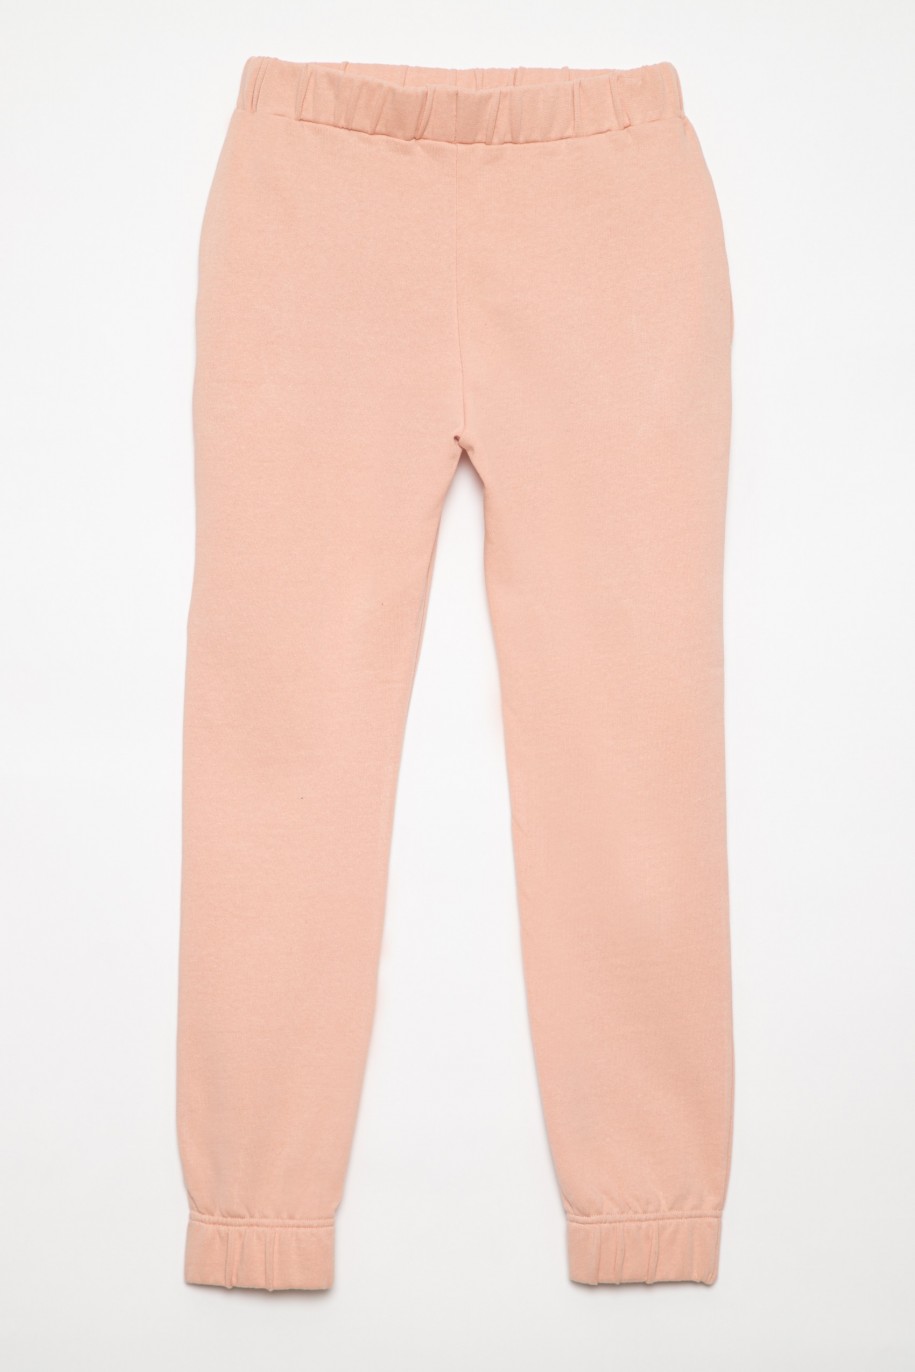 Różowe spodnie dresowe dla dziewczyny - 31947